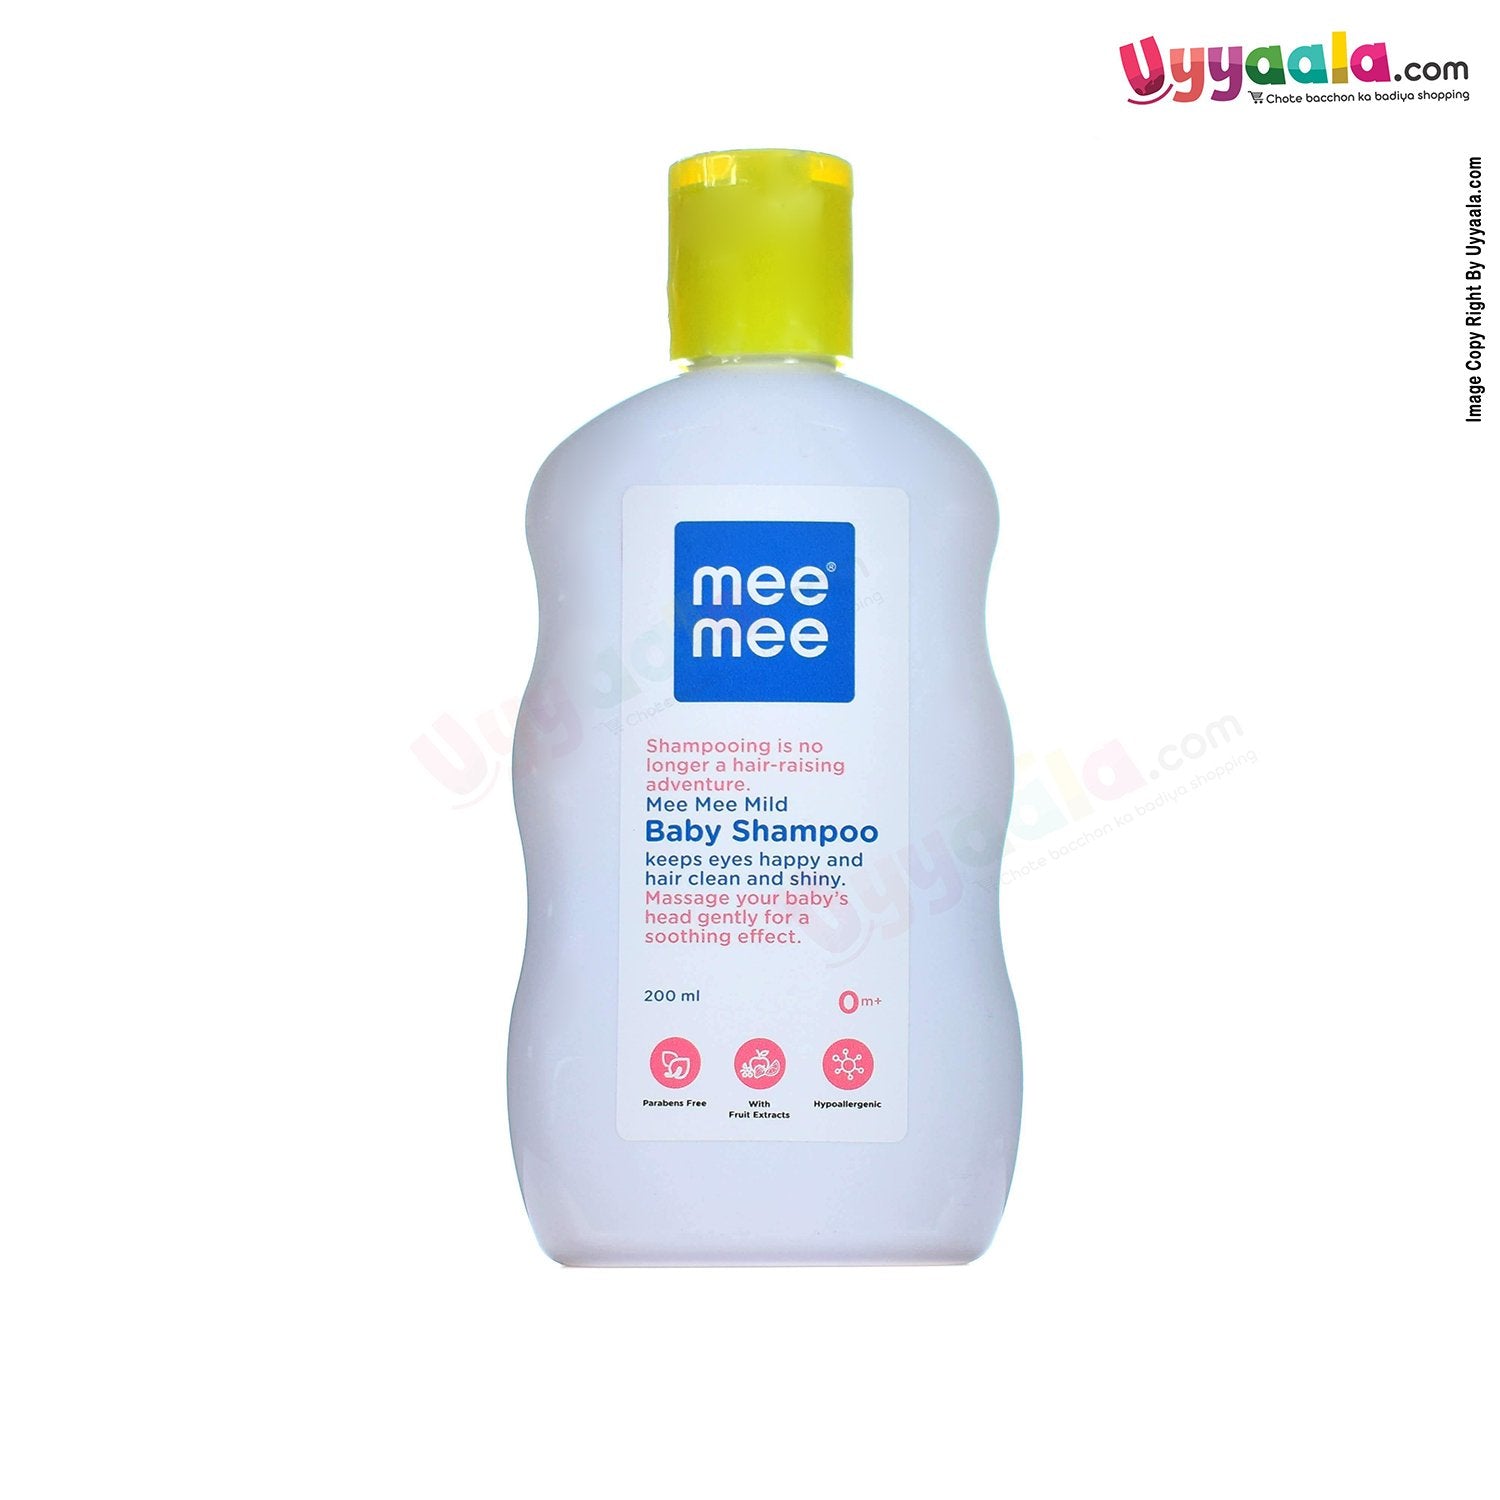 MEE MEE Mild Baby Shampoo Tear Free - 200ml-uyyala-com.myshopify.com-Shampoo-Mee Mee